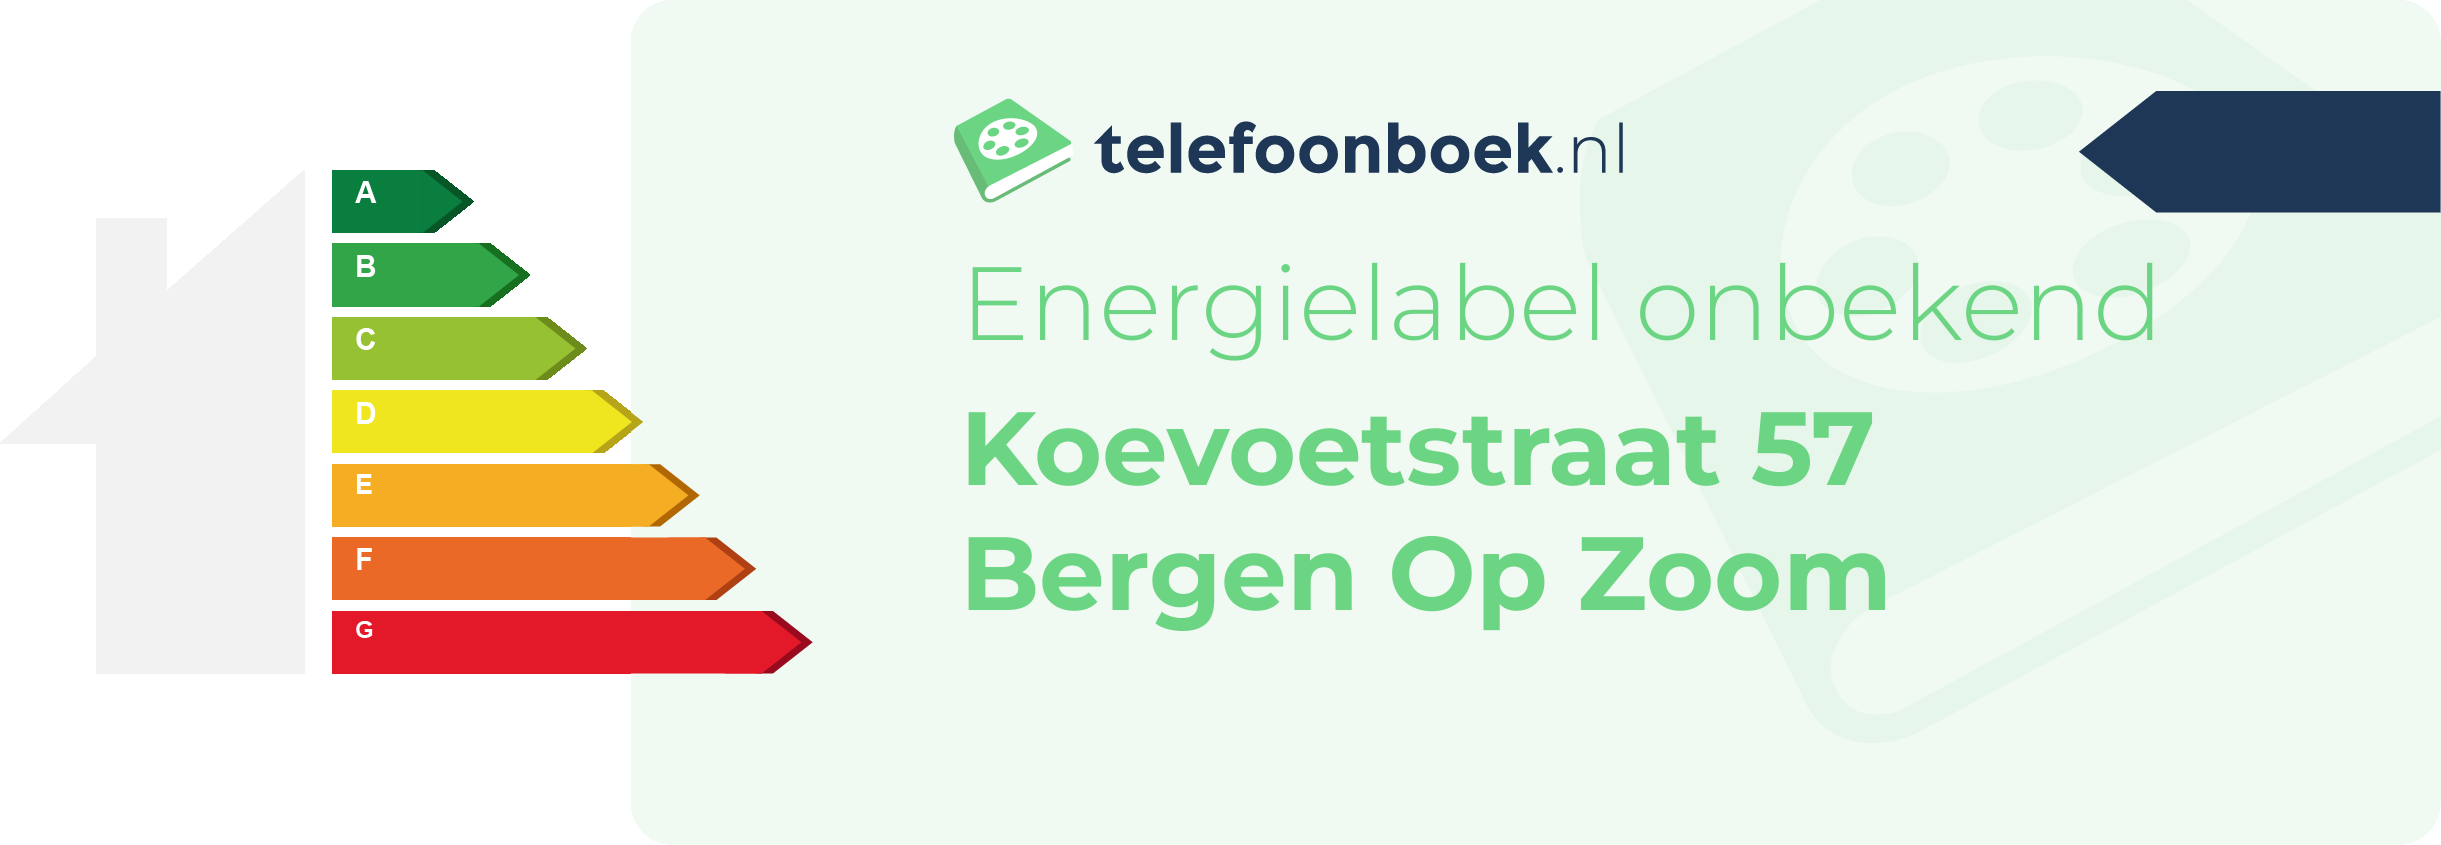 Energielabel Koevoetstraat 57 Bergen Op Zoom